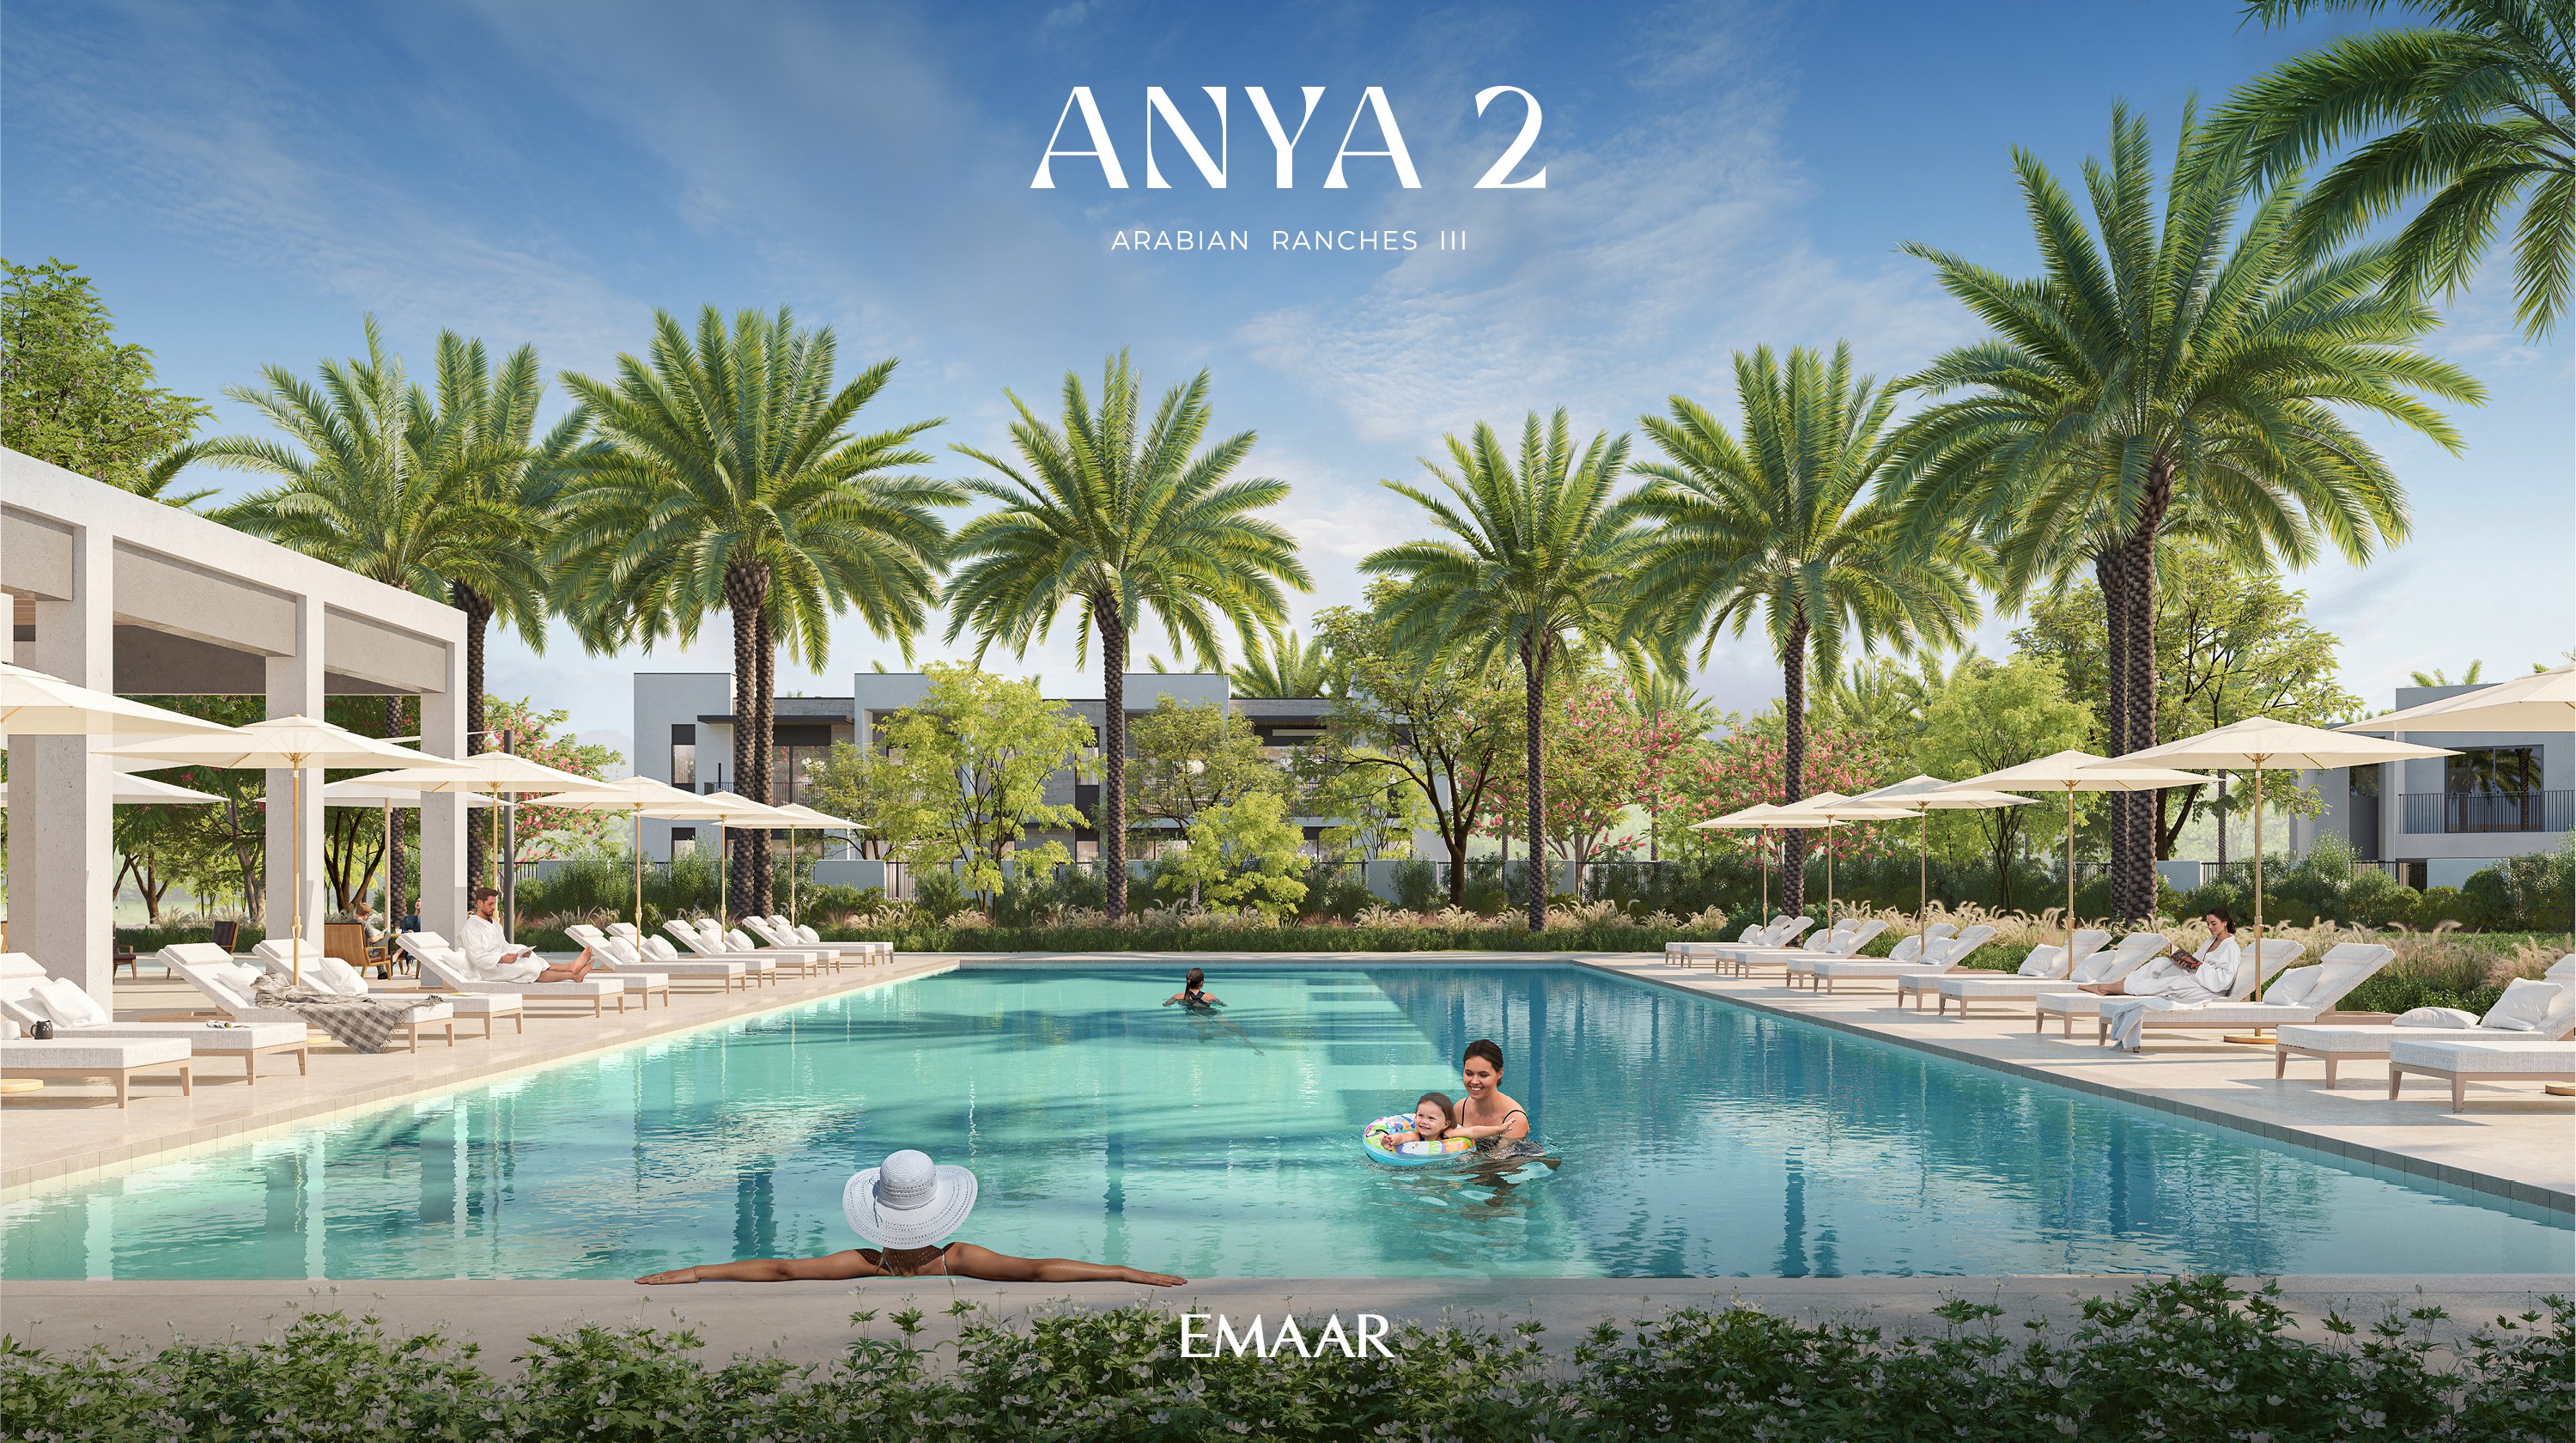 Anya 2 by Emaar